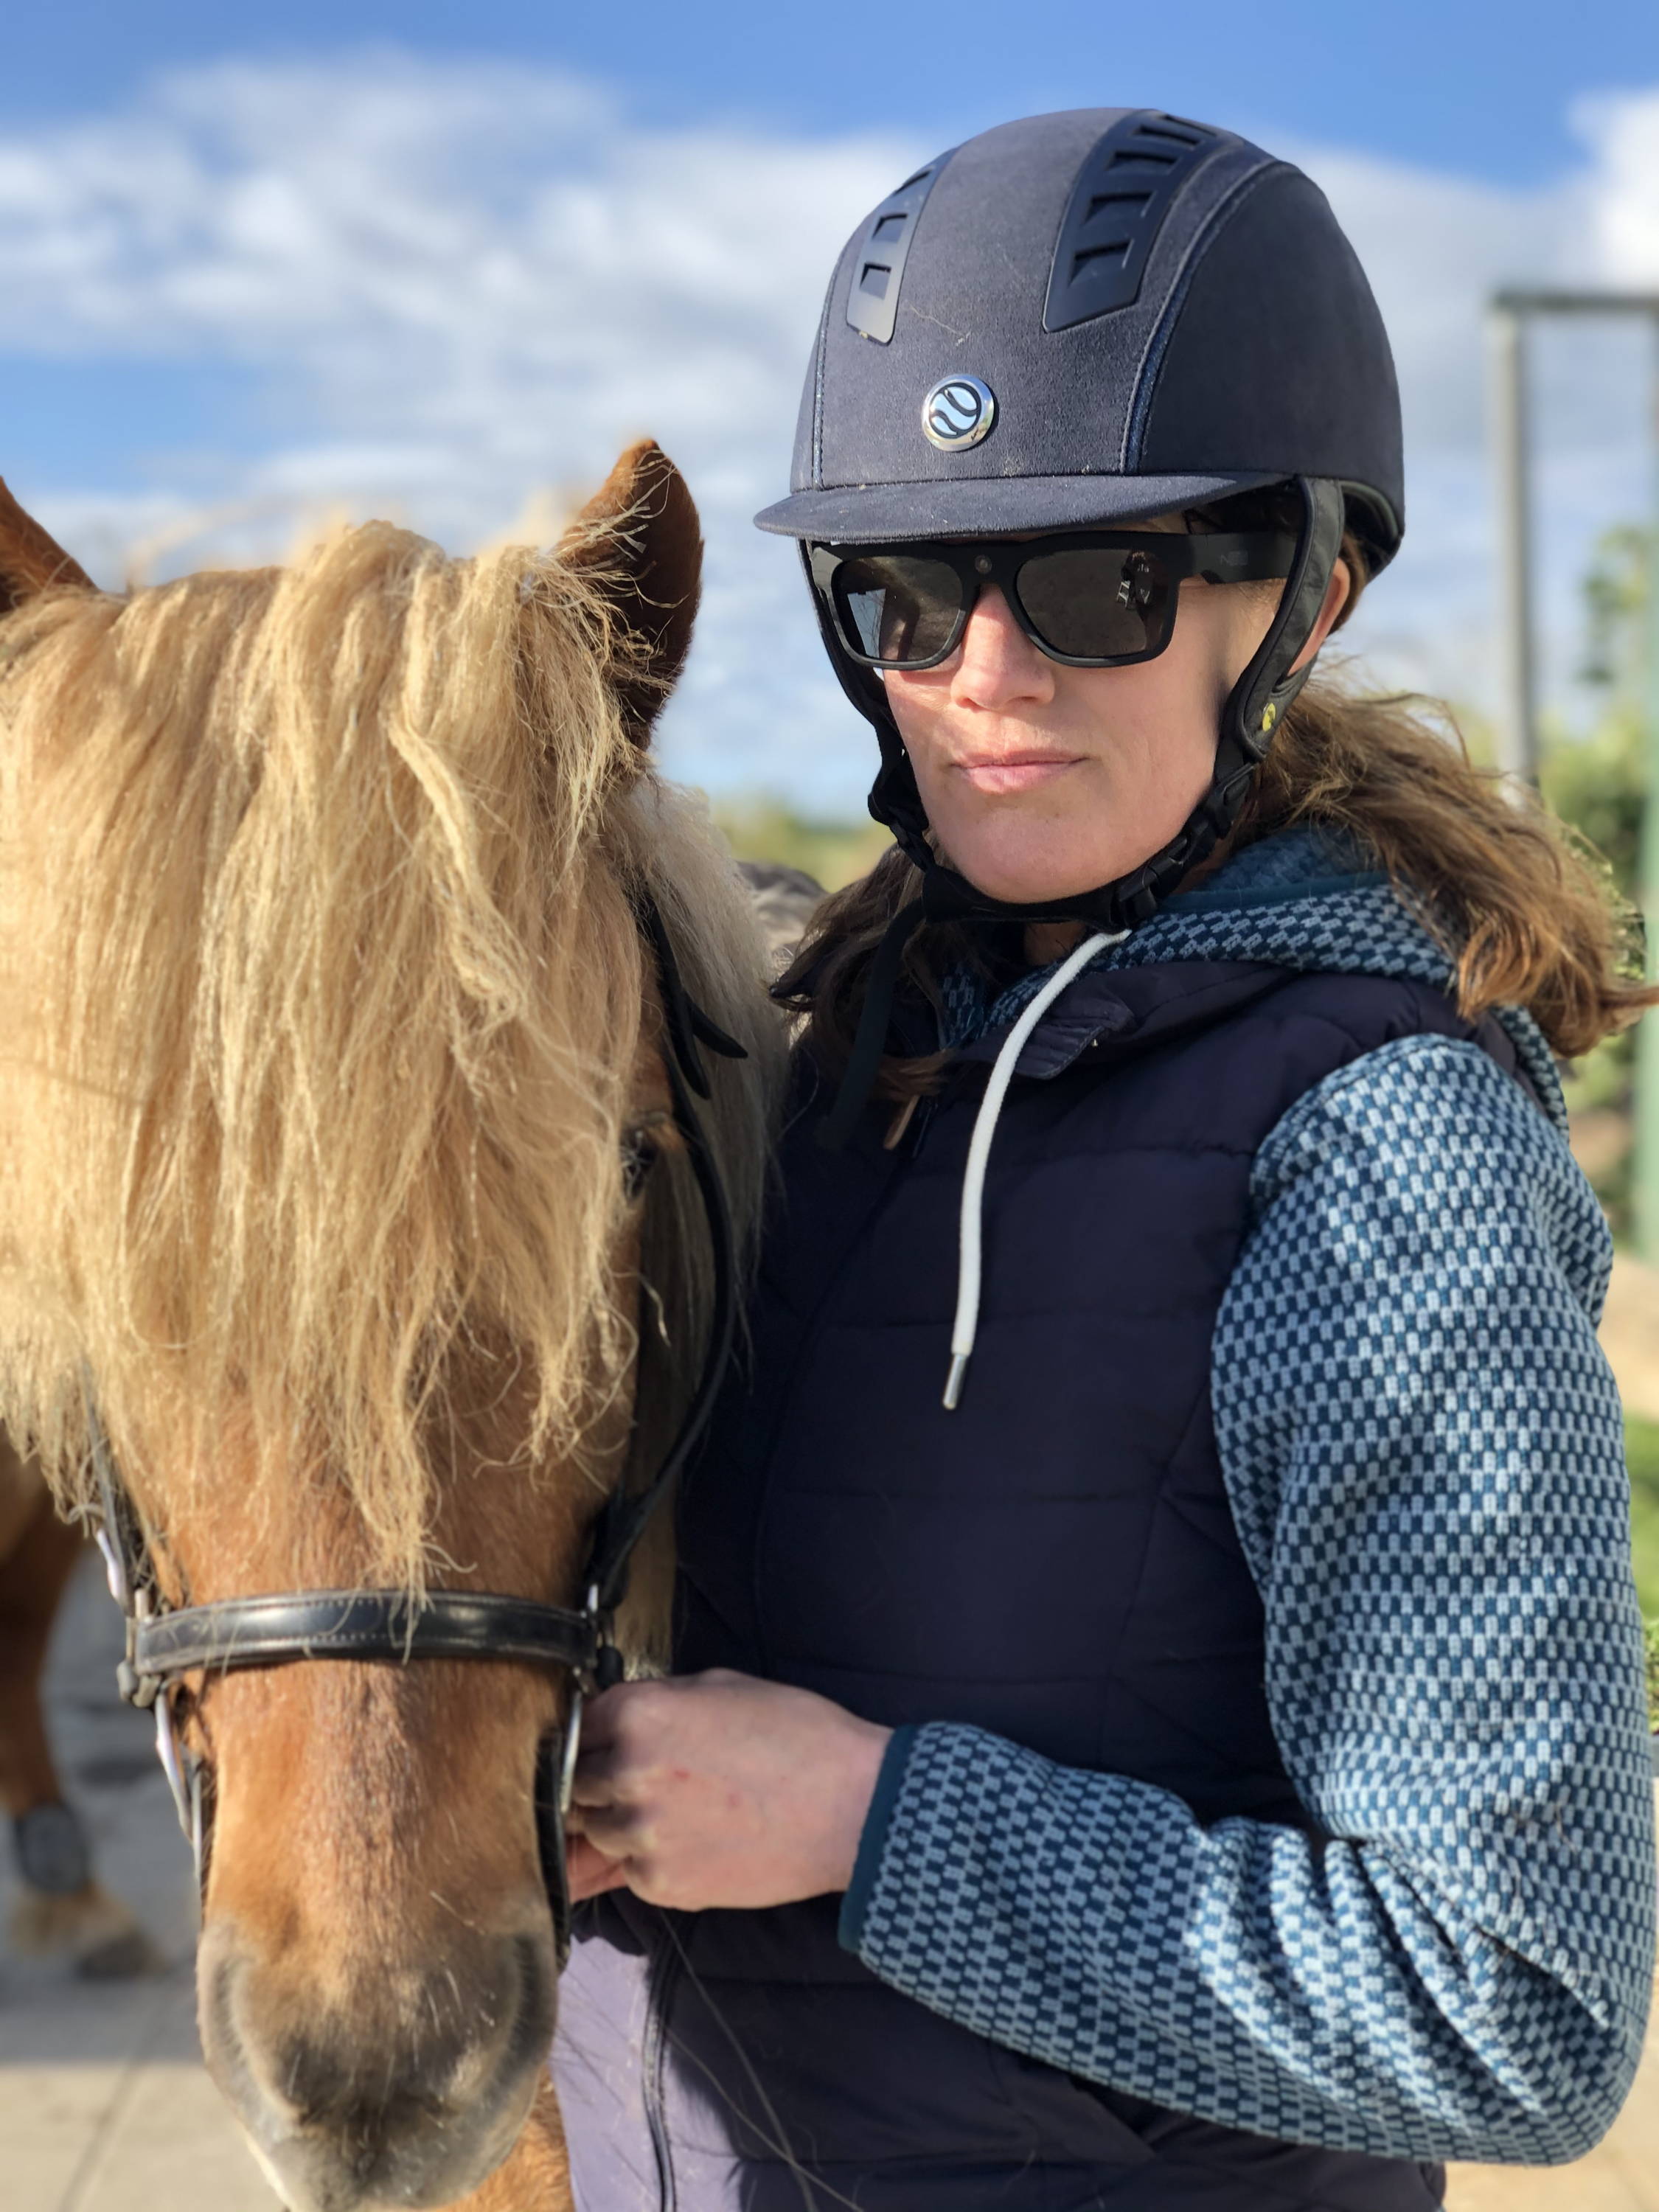 Camilla som er hesterytter står og poserer sammen med sin hest og saturn kamera solbrille på.